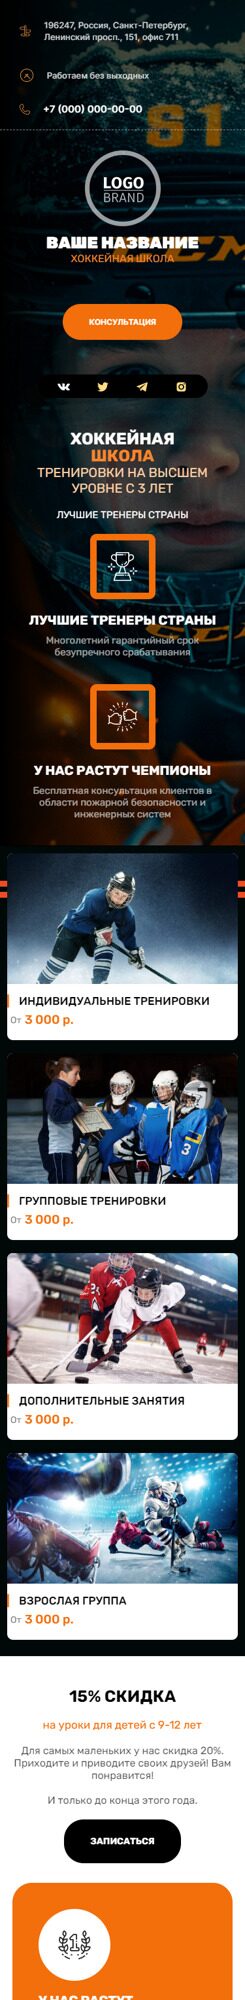 Готовый Сайт-Бизнес № 5362881 - Хоккейная школа (Мобильная версия)